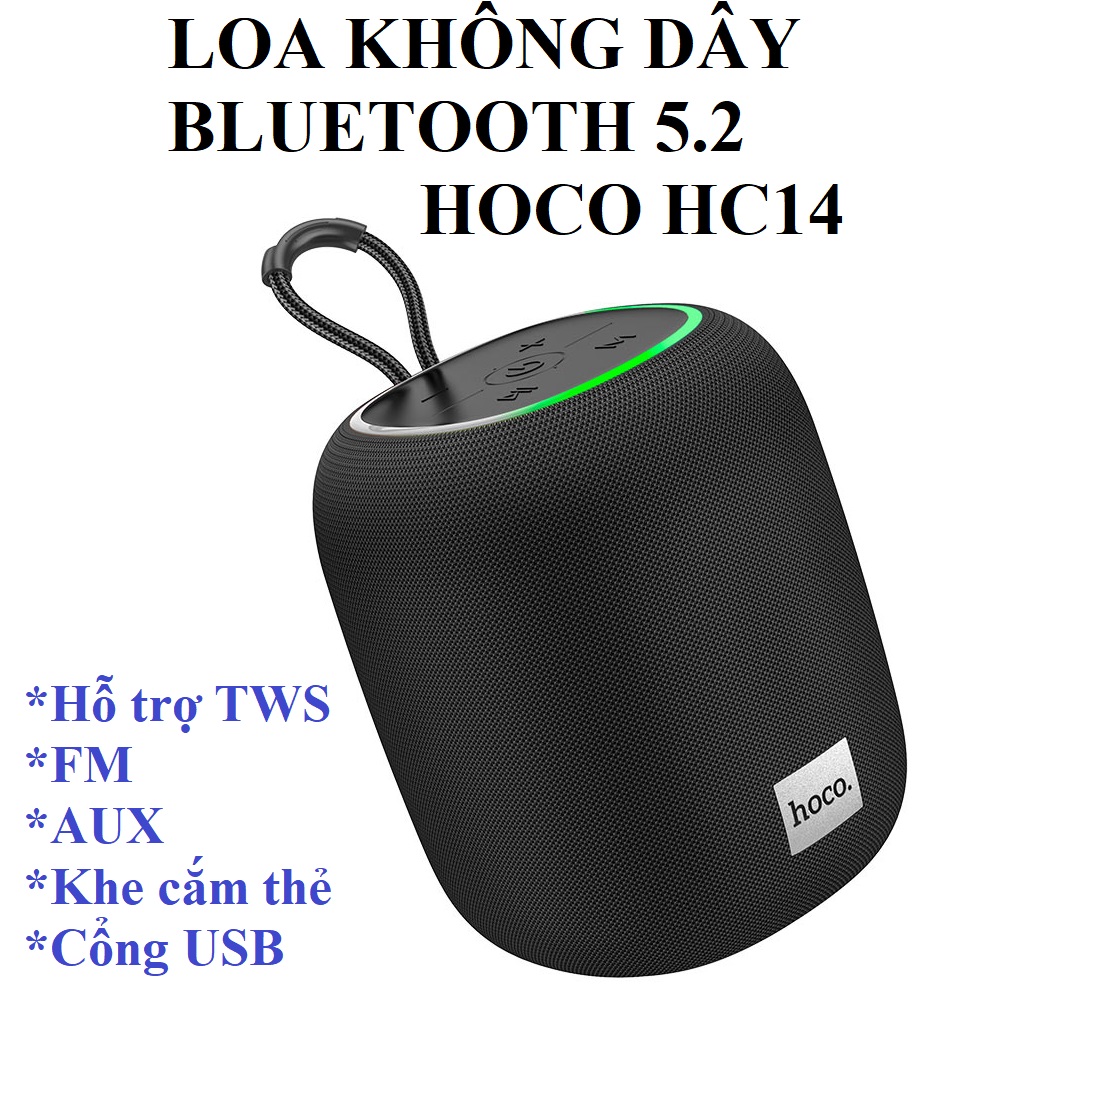 Loa không dây bluetooth V5.2 hỗ trợ TWS cho điện thoại laptop hoco HC14 _ Hàng chính hãng